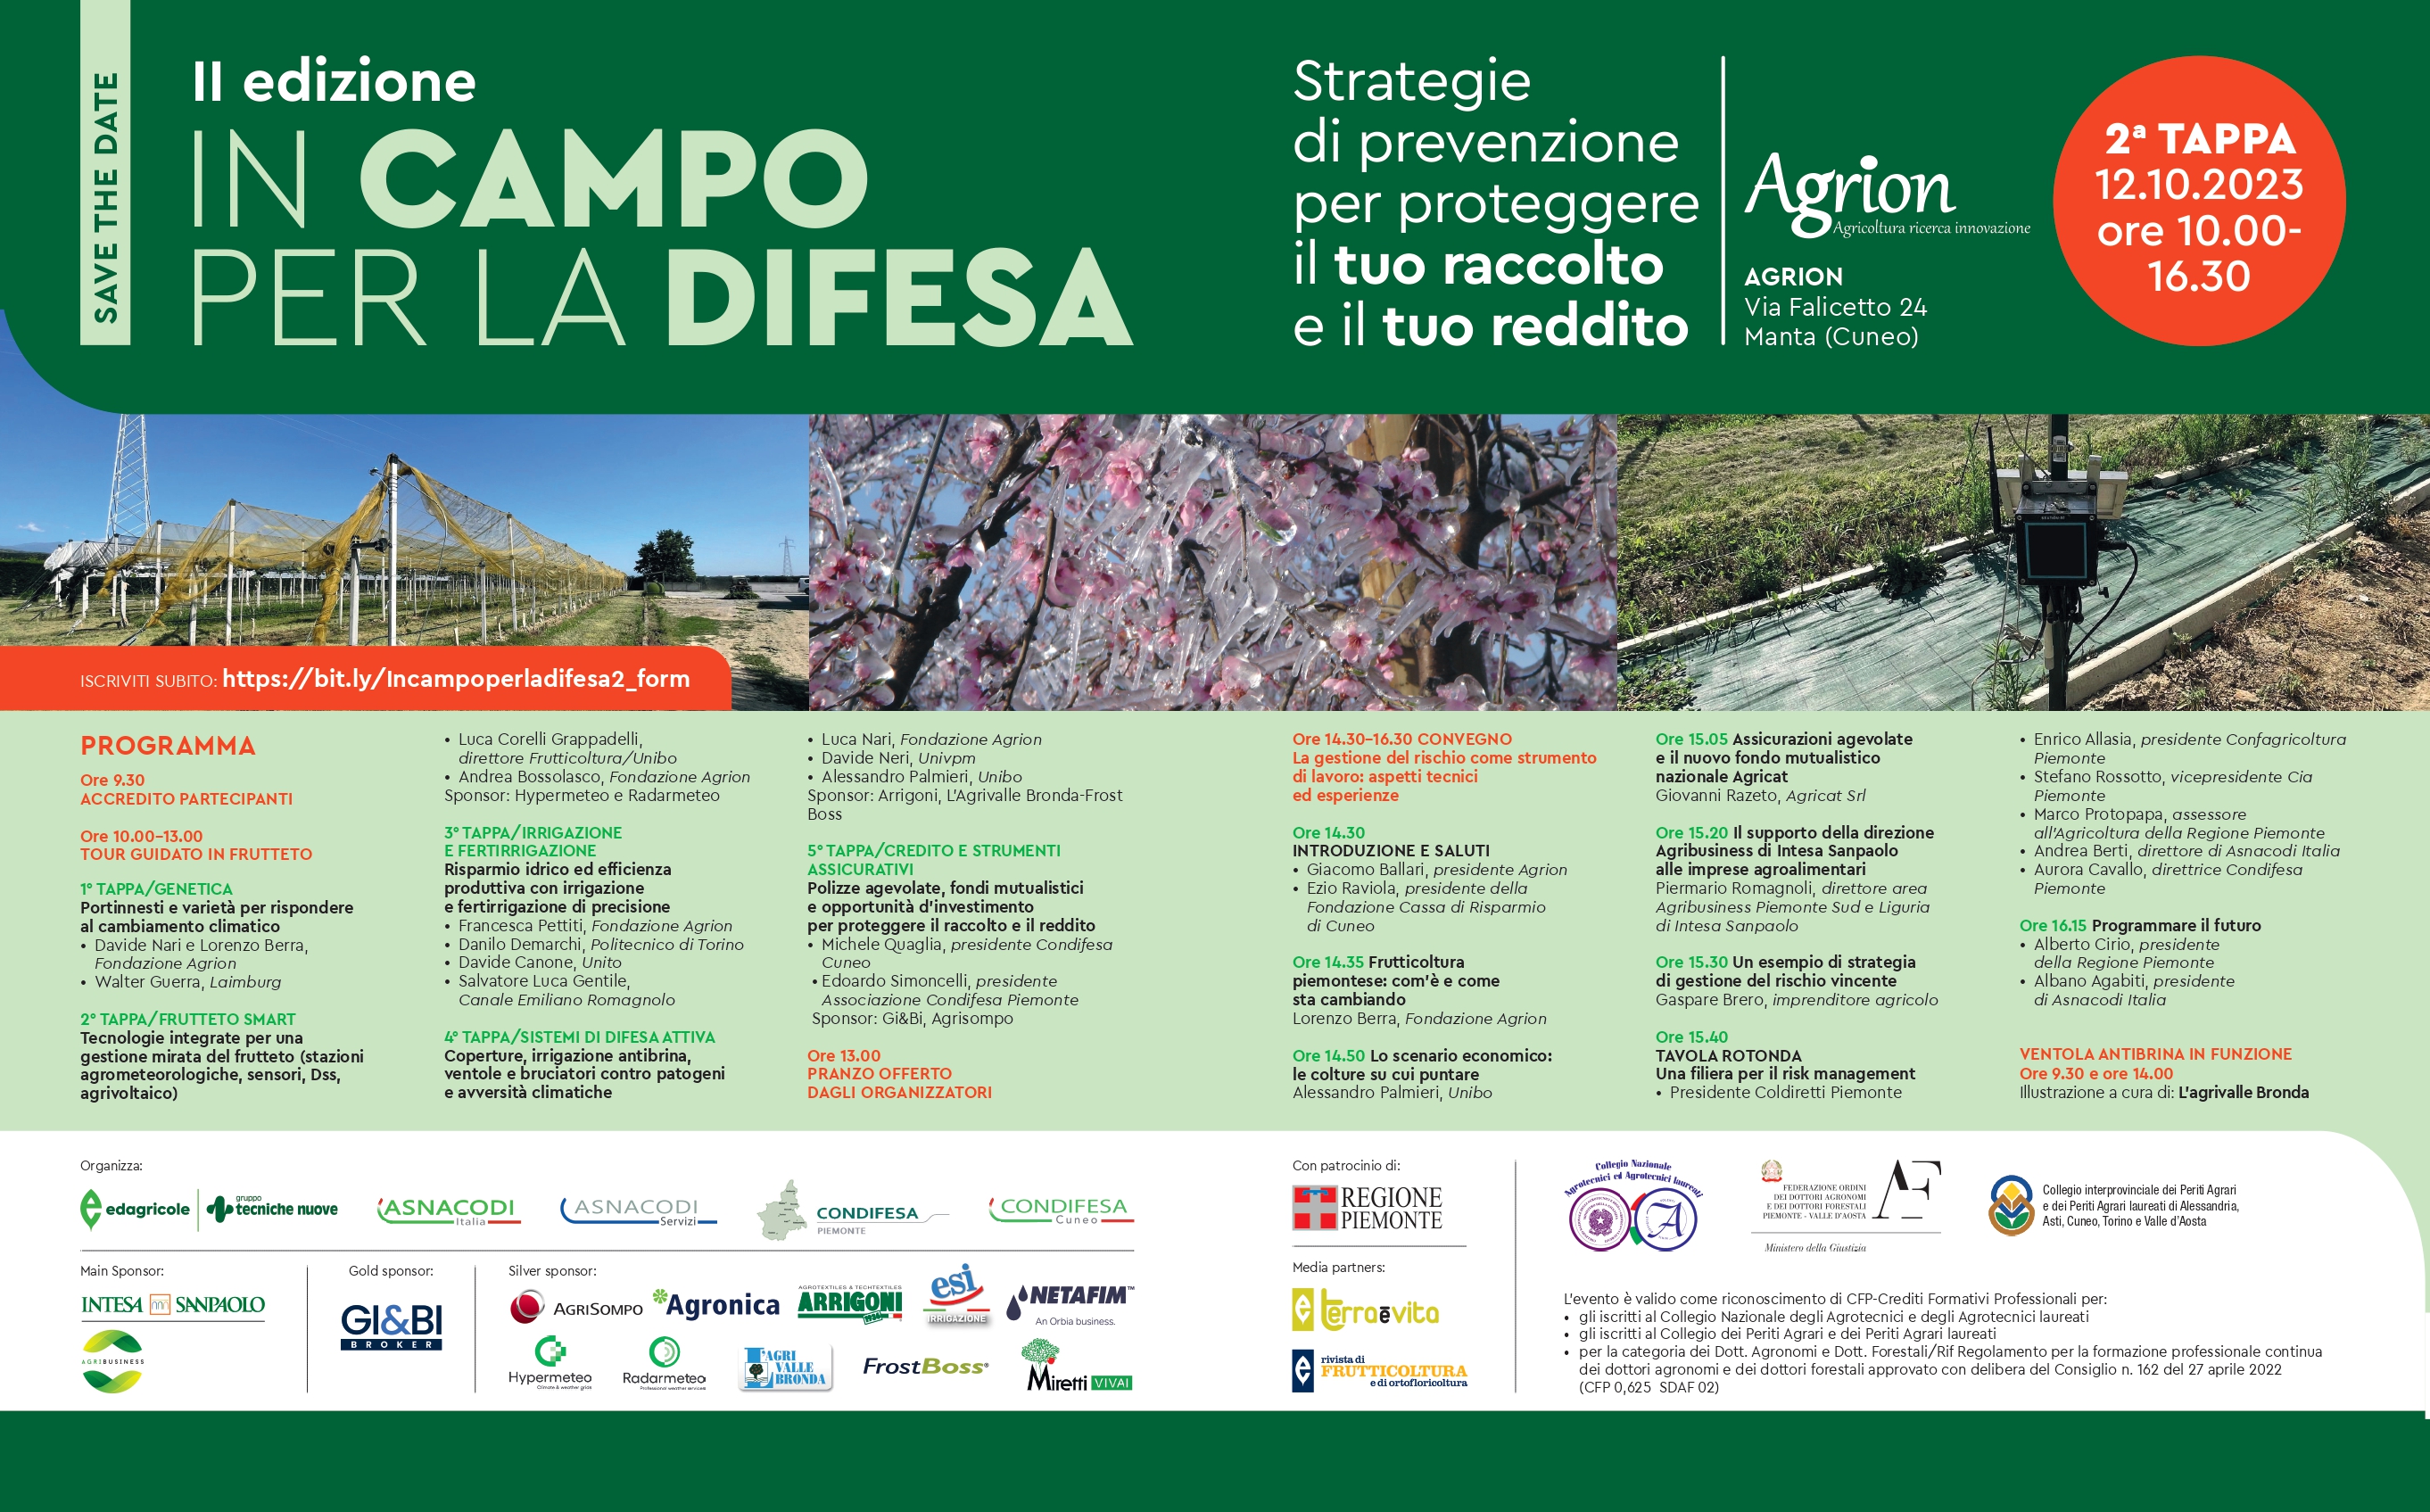 IN CAMPO PER LA DIFESA - II EDIZIONE - Strategie di prevenzione per proteggere il tuo raccolto e il tuo reddito